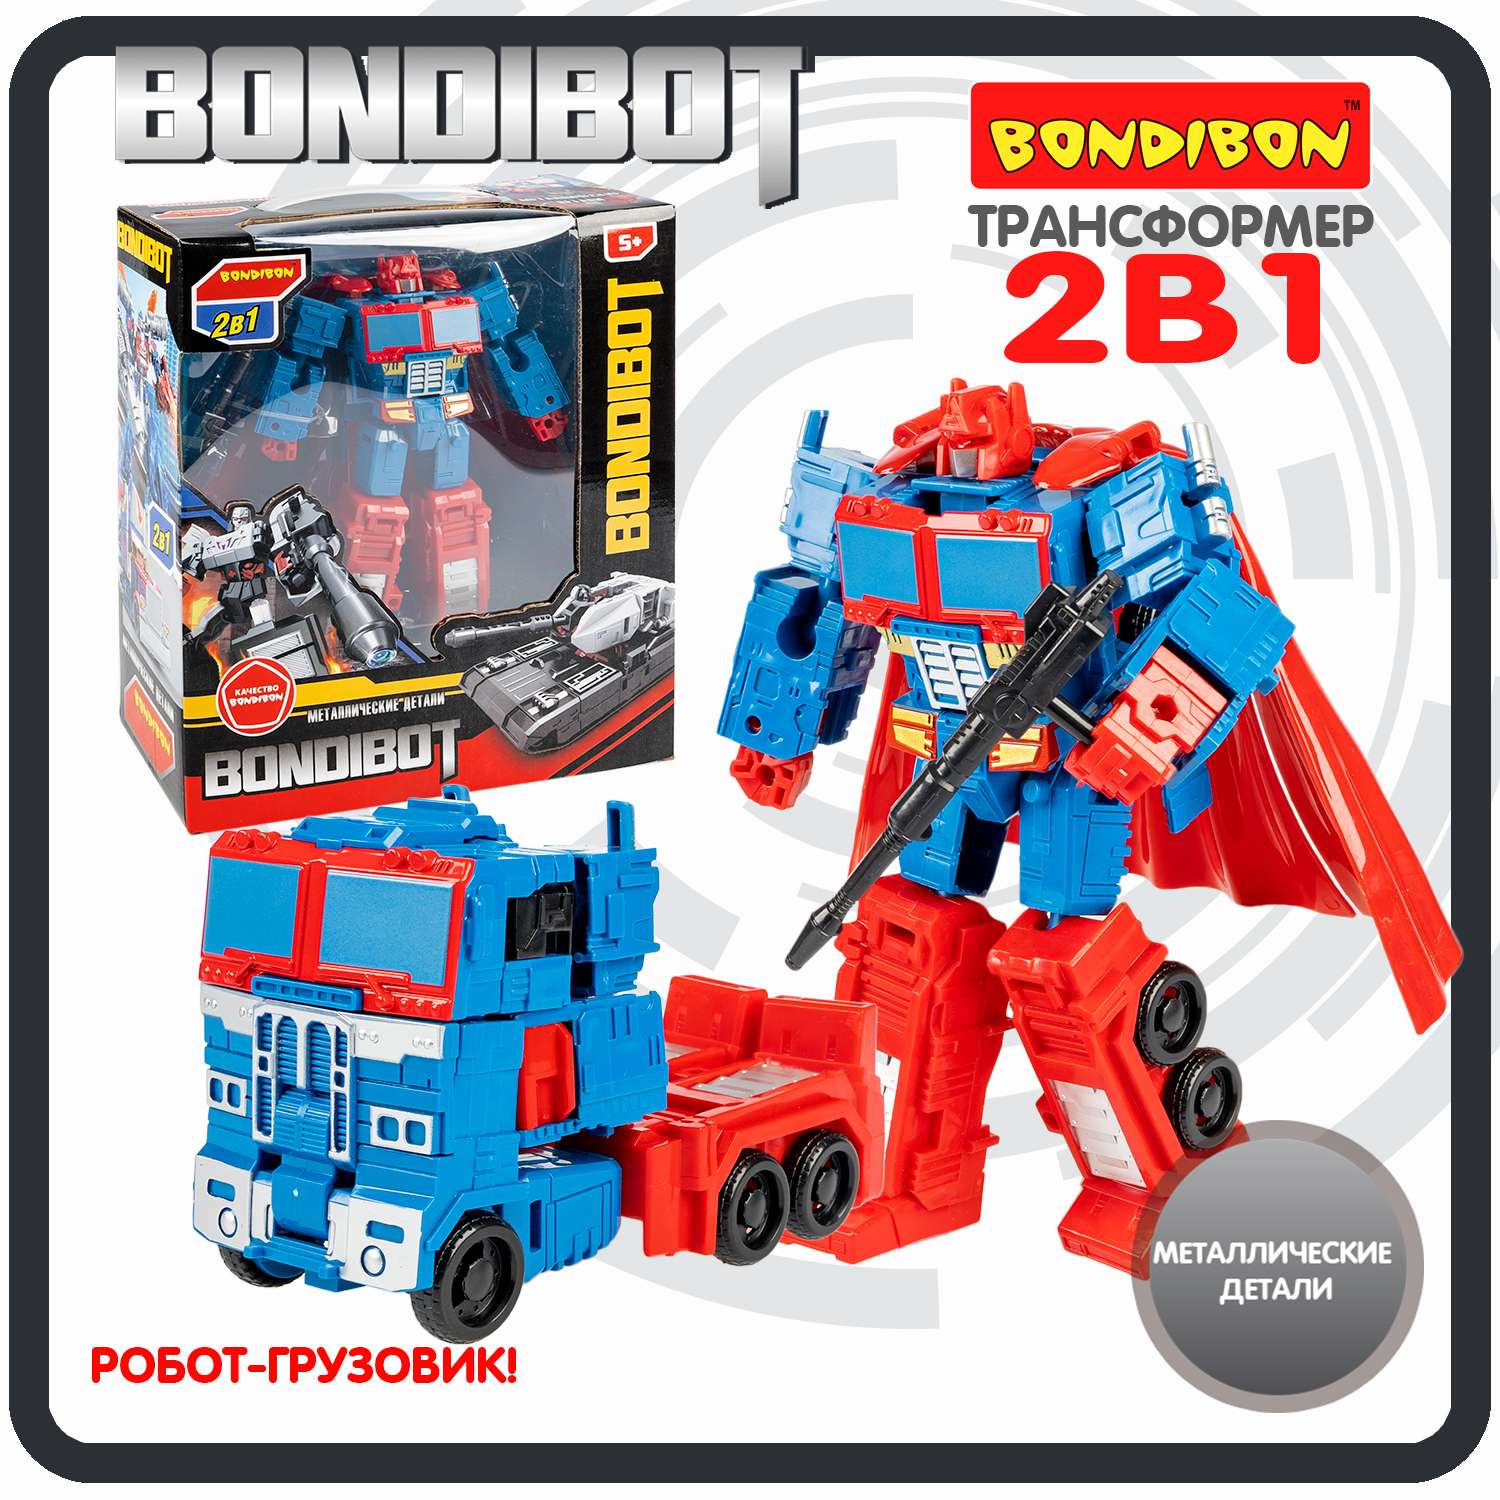 Трансформер BONDIBON BONDIBOT 2 в 1 робот-грузовик с металлическими деталями красно-голубого цвета - фото 1